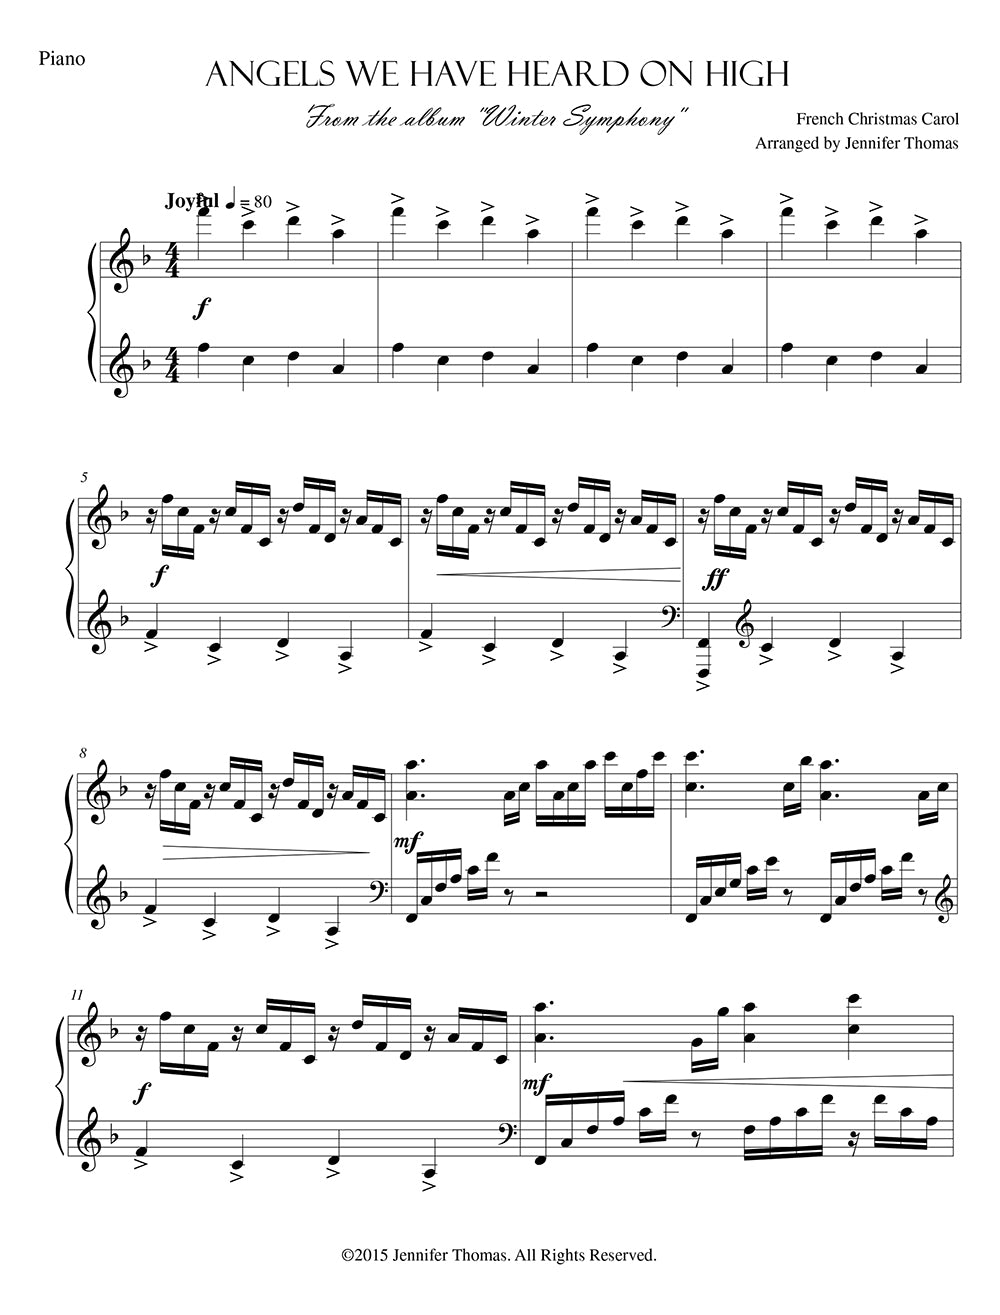 Cancionero digital para piano solo de Winter Symphony